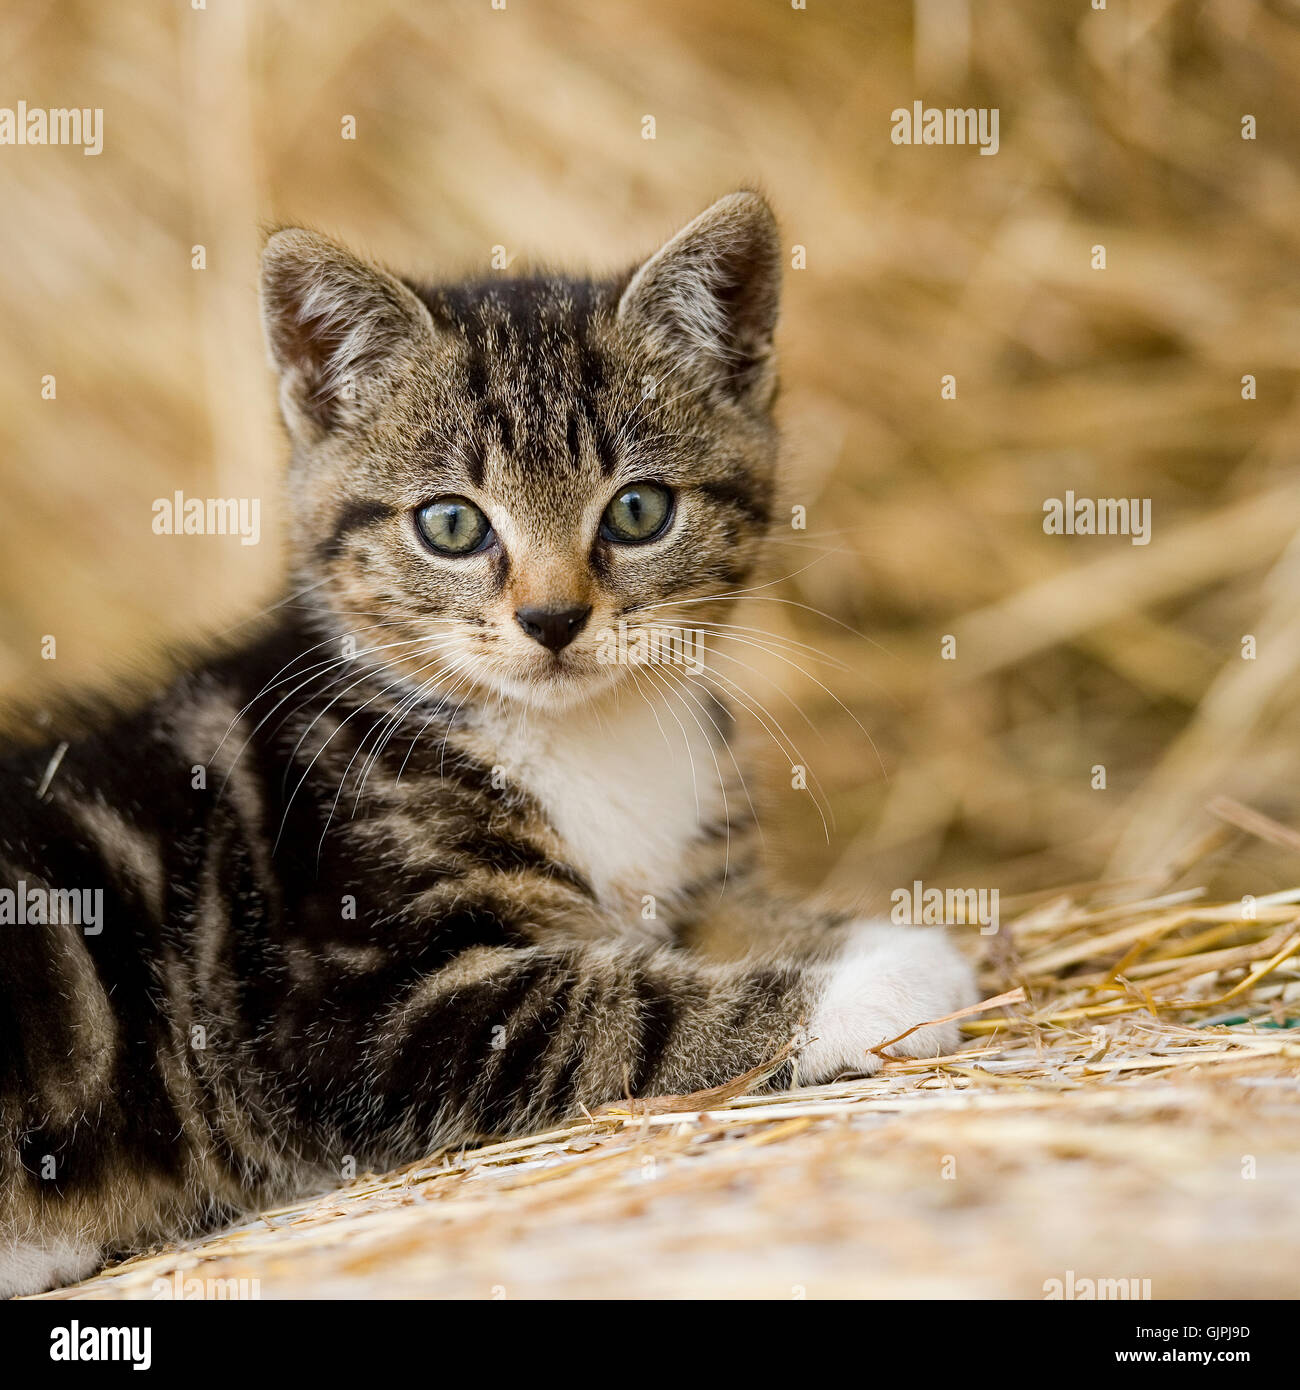 tabby kitten, cat Stock Photo